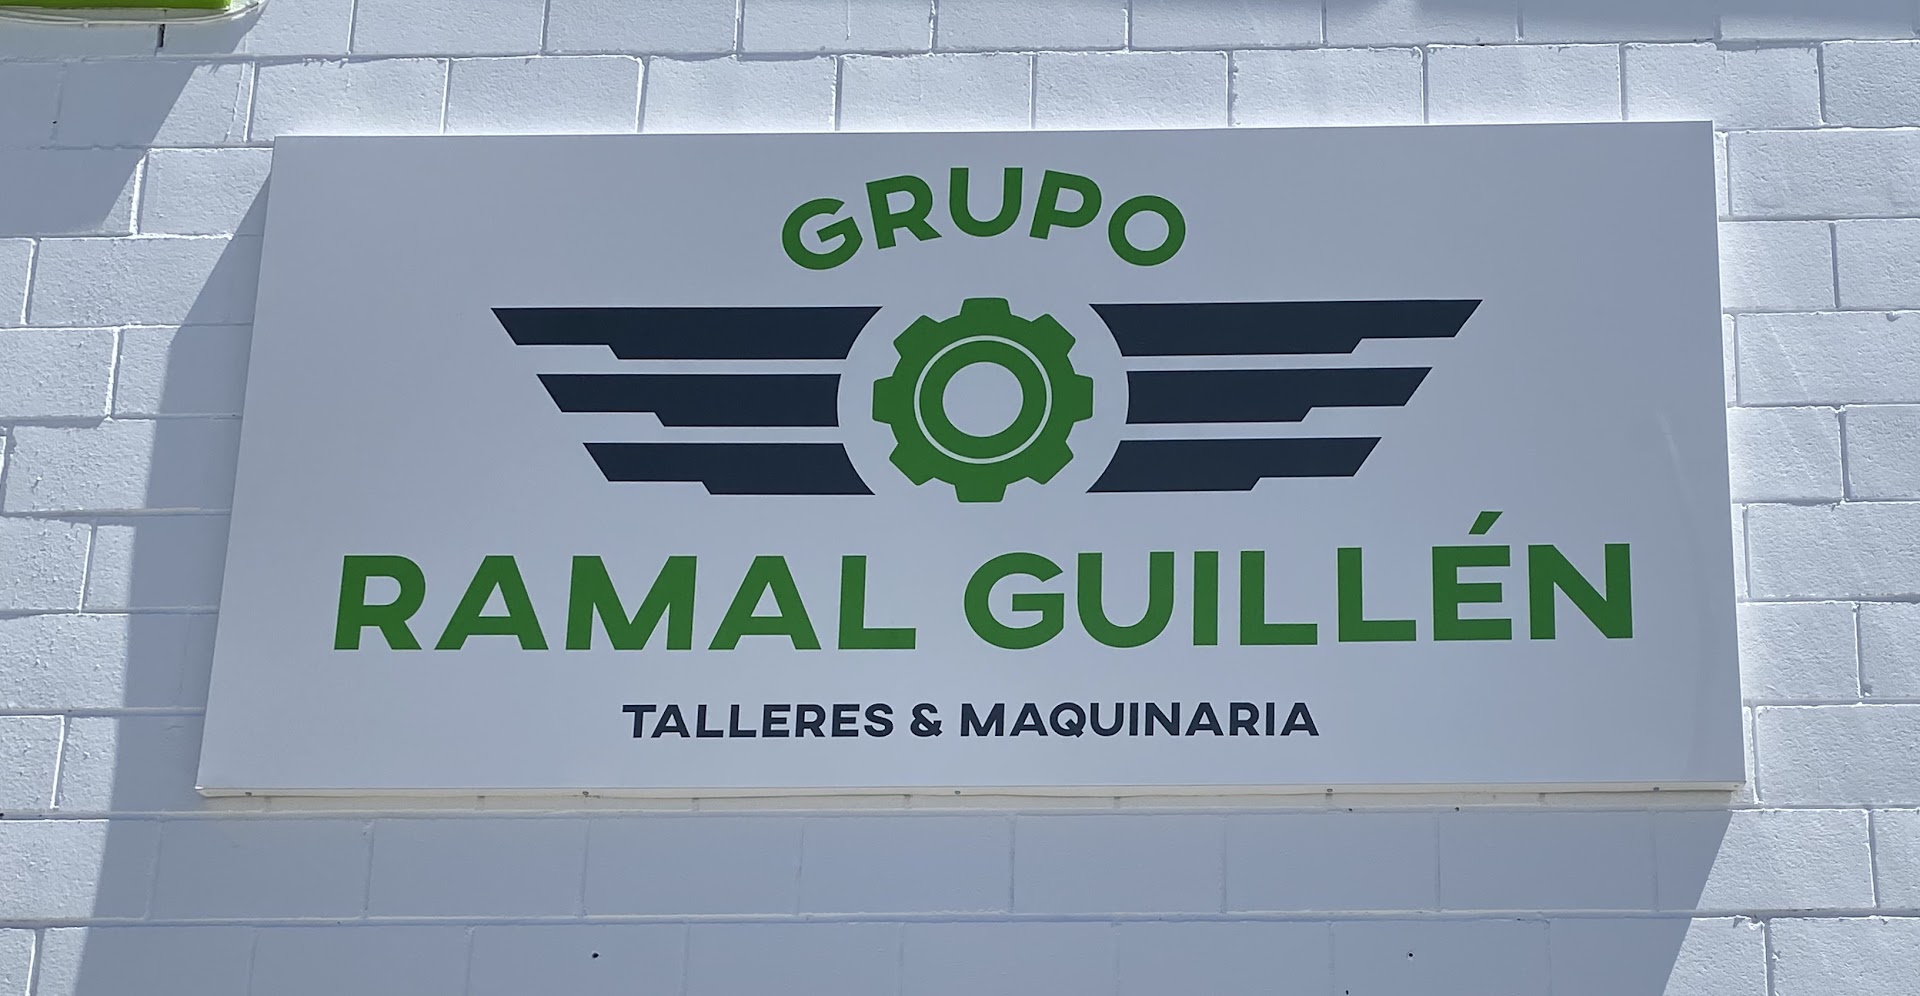 Grupo Ramal Guillen